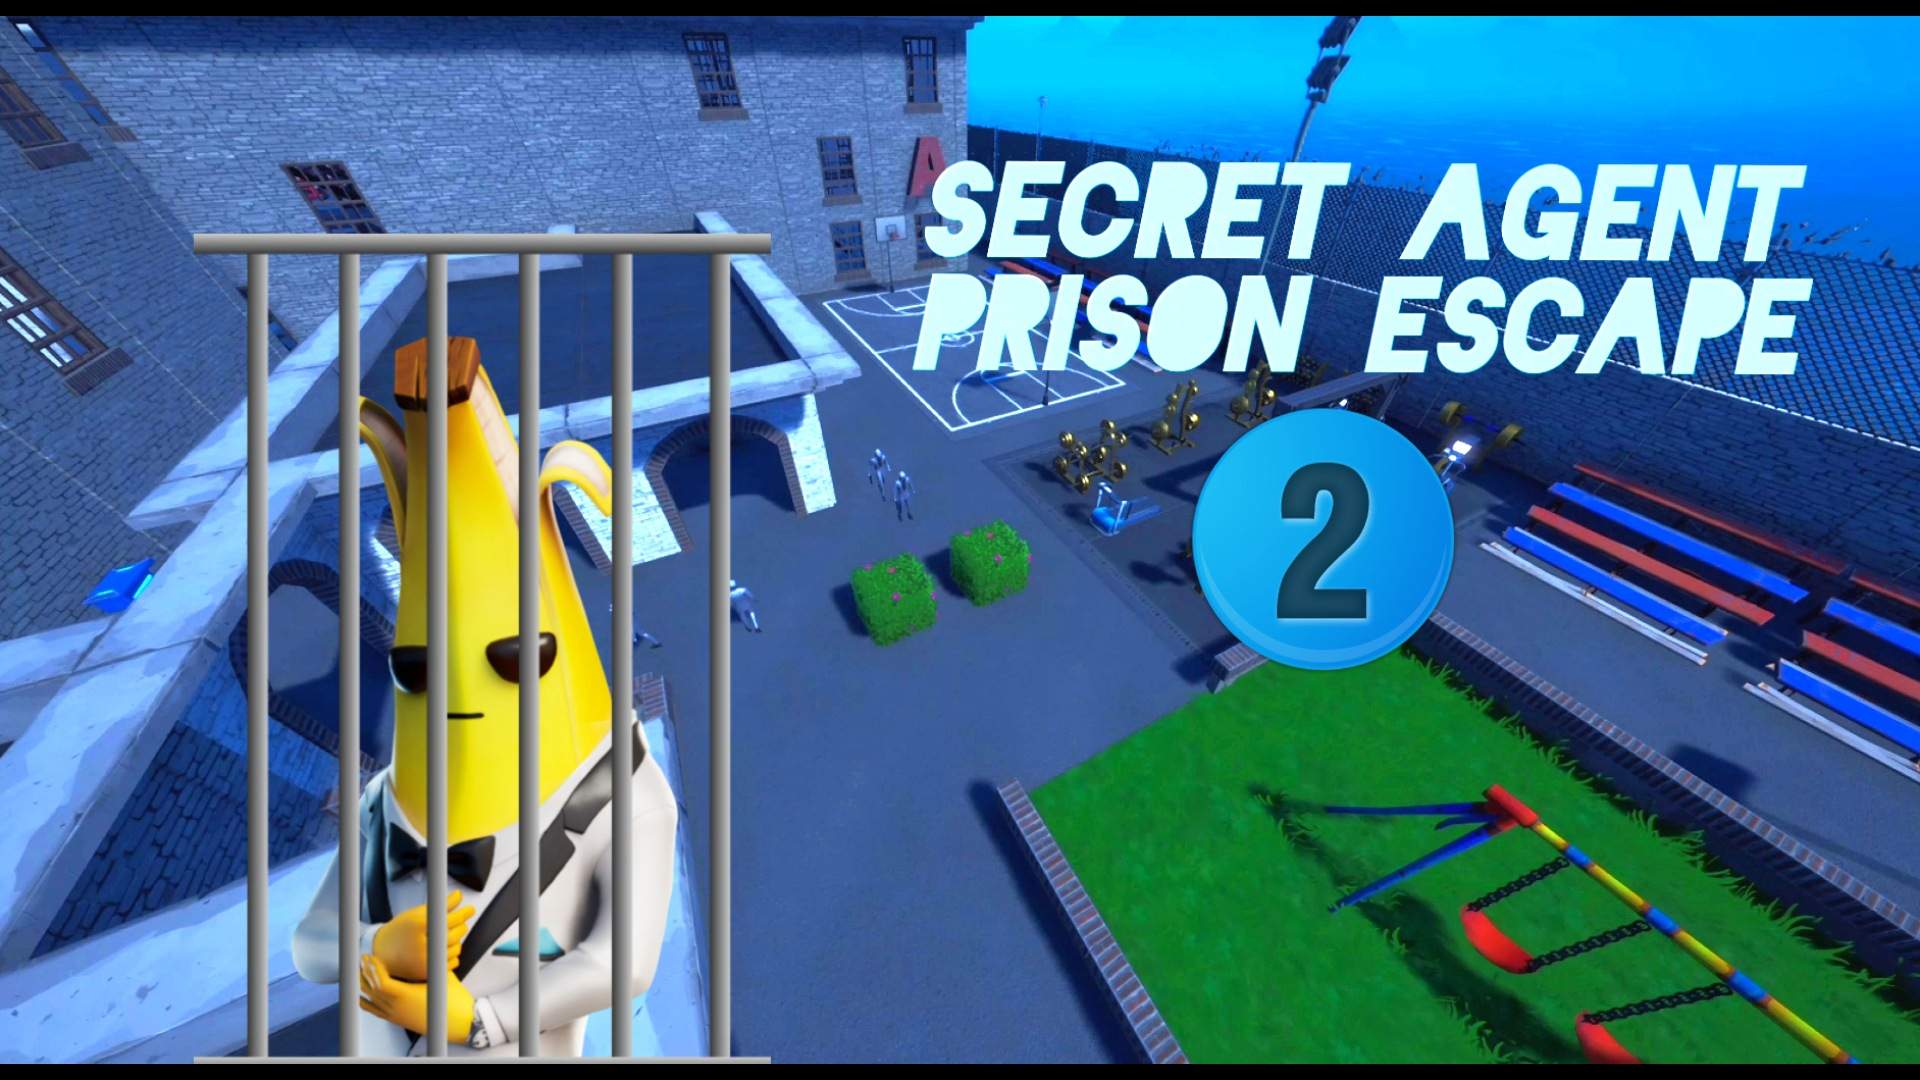 Prison Escape v2 [ UPDATE! ] - Roblox